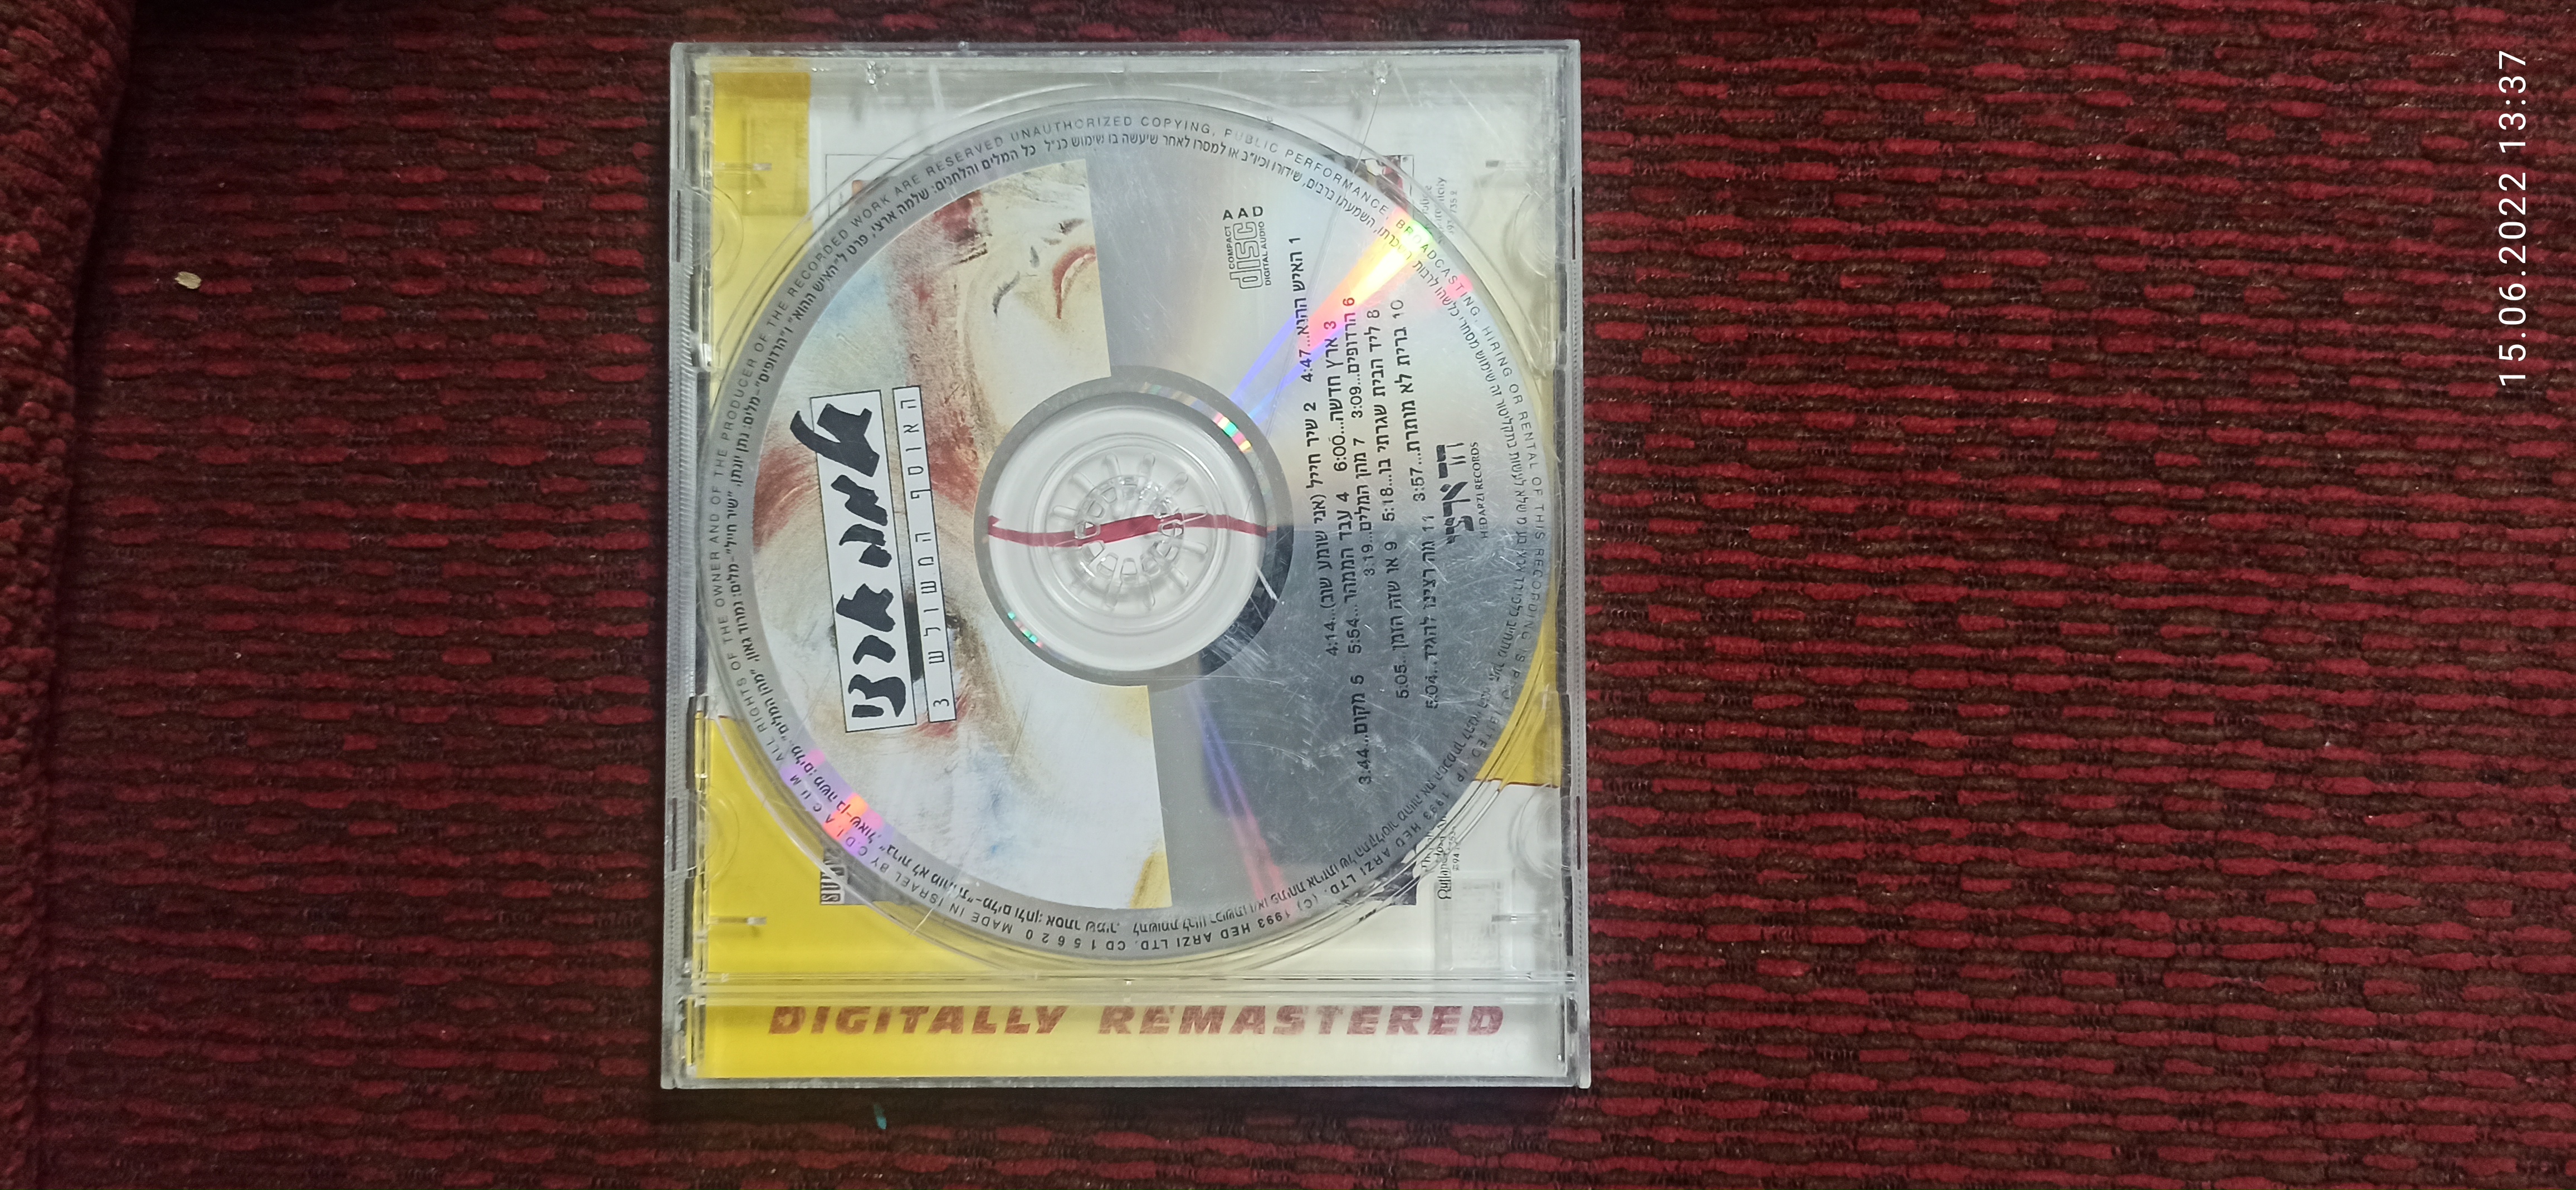 תמונה 1 ,דיסק שלמה ארצי למכירה ביבנה מוסיקה וסרטים  cd